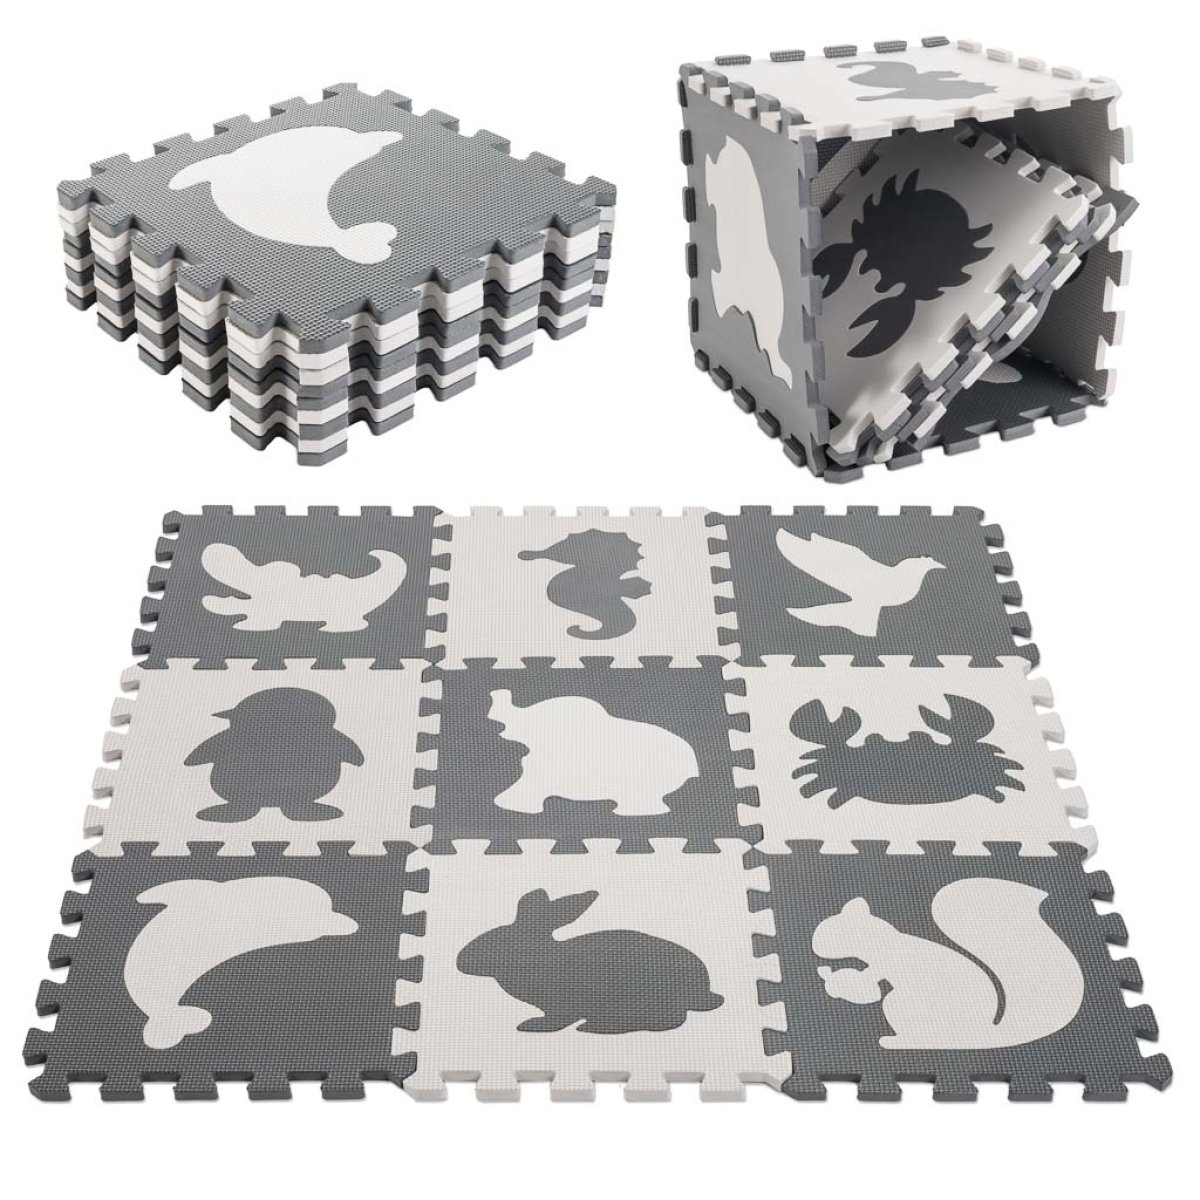 Velká pěnová podložka puzzle pro děti / zvířátka